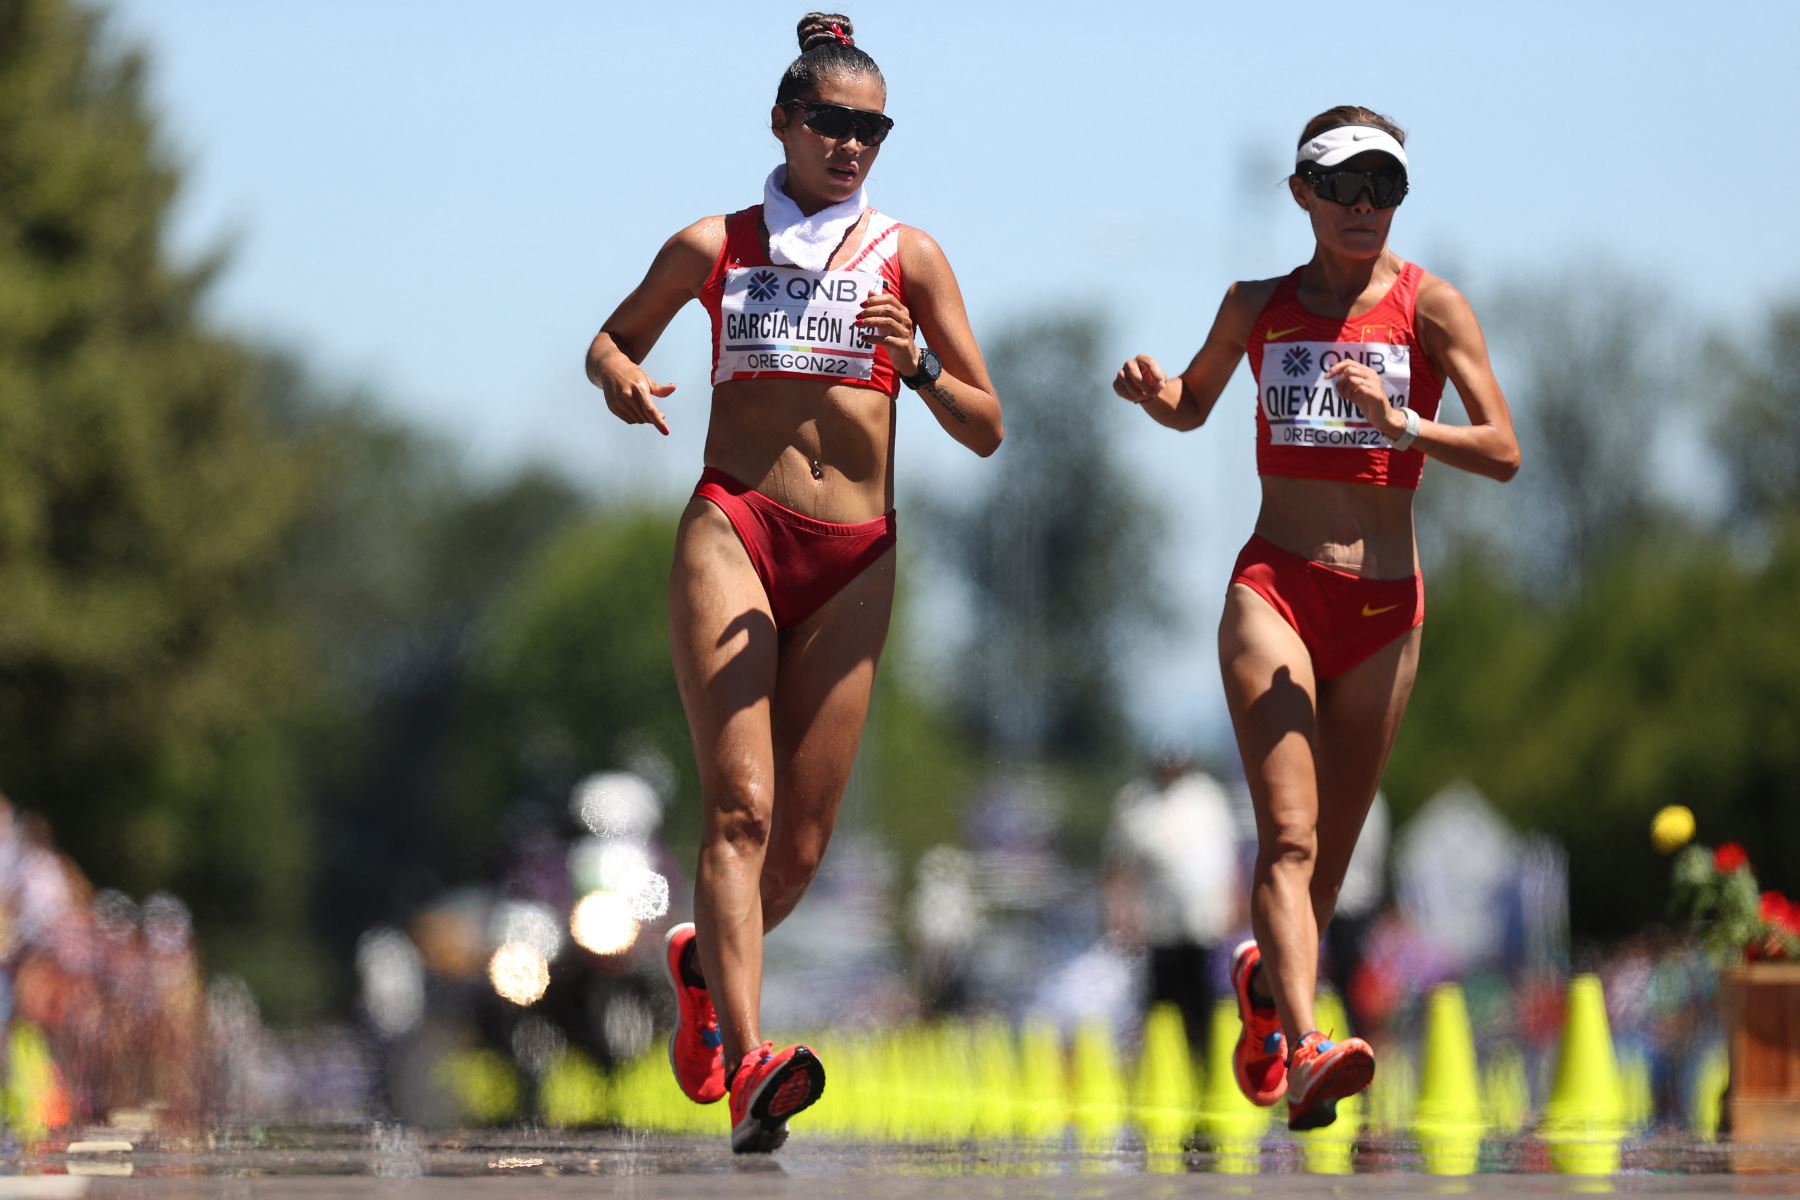 Kimberly García León del Equipo Perú y Shijie Qieyang del Equipo China compiten en la Final de la Carrera de 20 Kilómetros de Mujeres el primer día del Campeonato Mundial de Atletismo Oregon22 en Hayward Field.
Foto: AFP